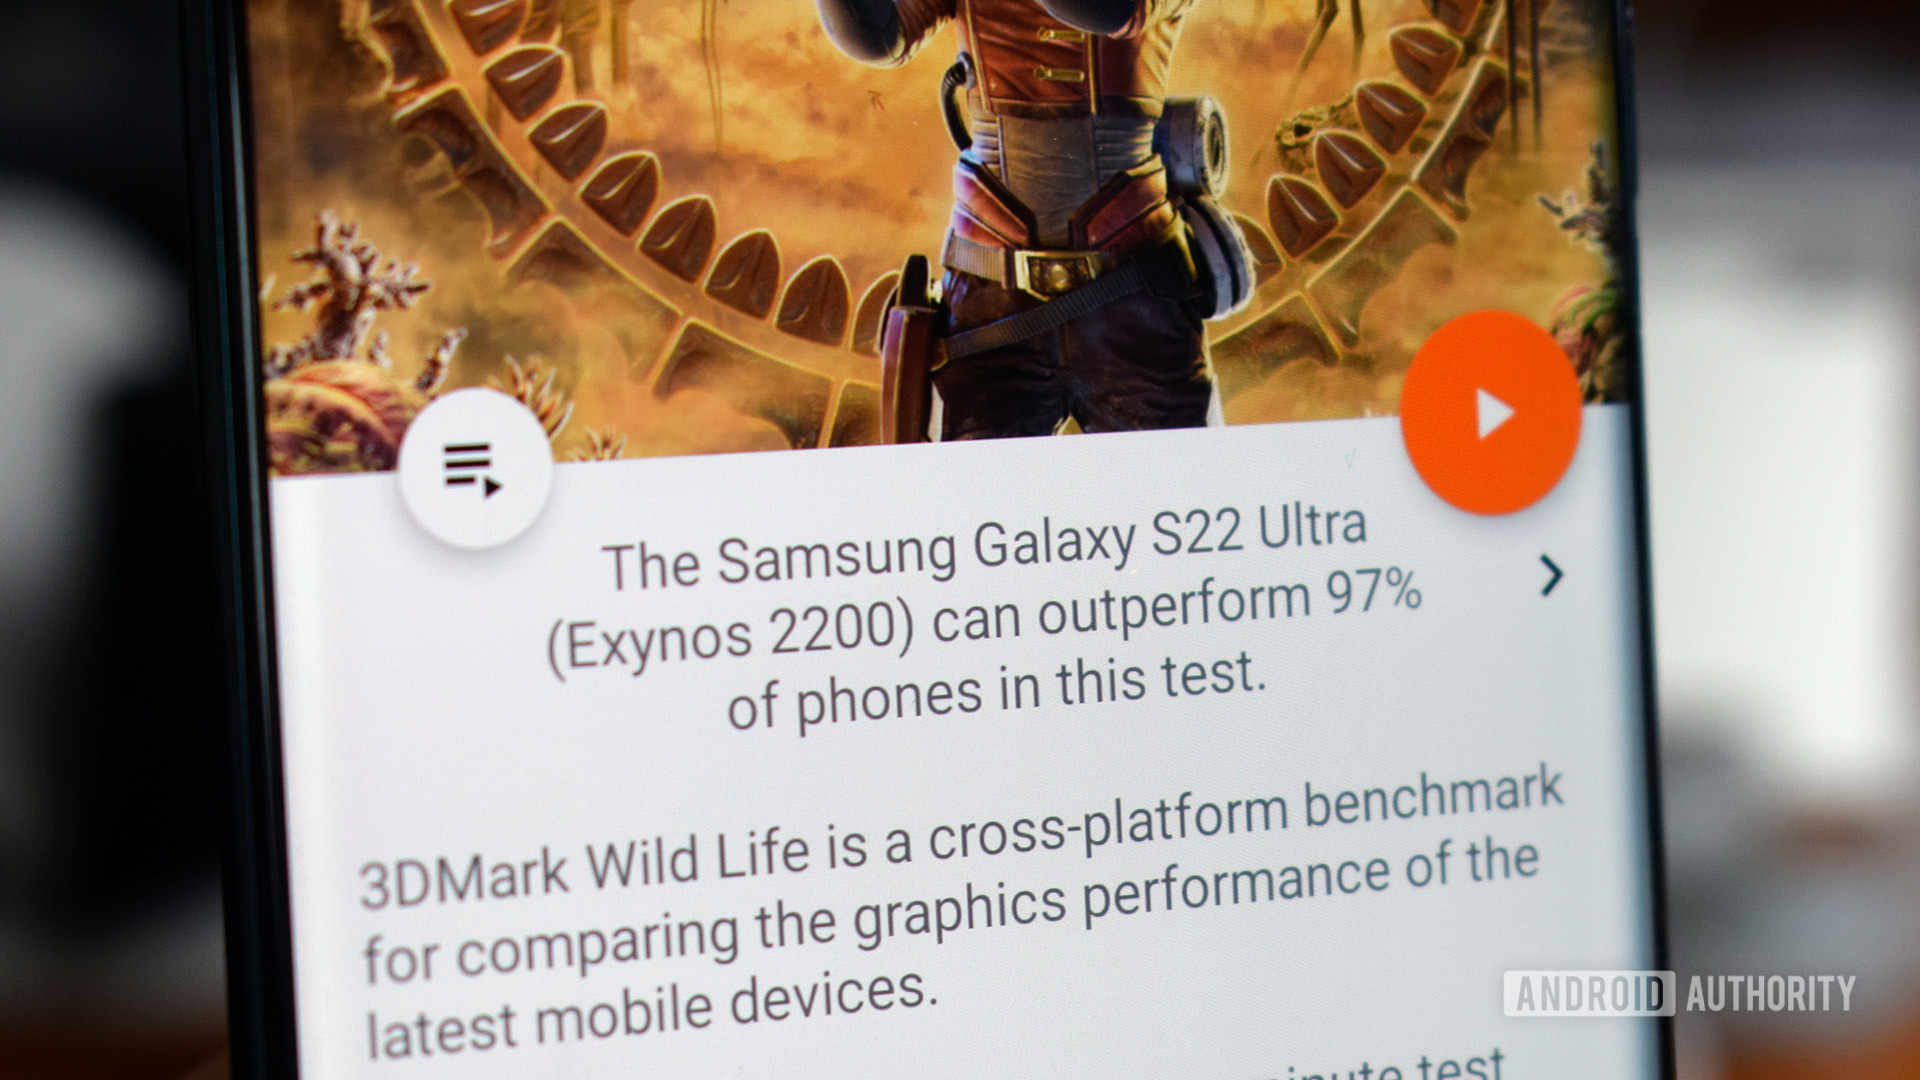 Samsung Galaxy S22 Ultra 3DMark benchmark